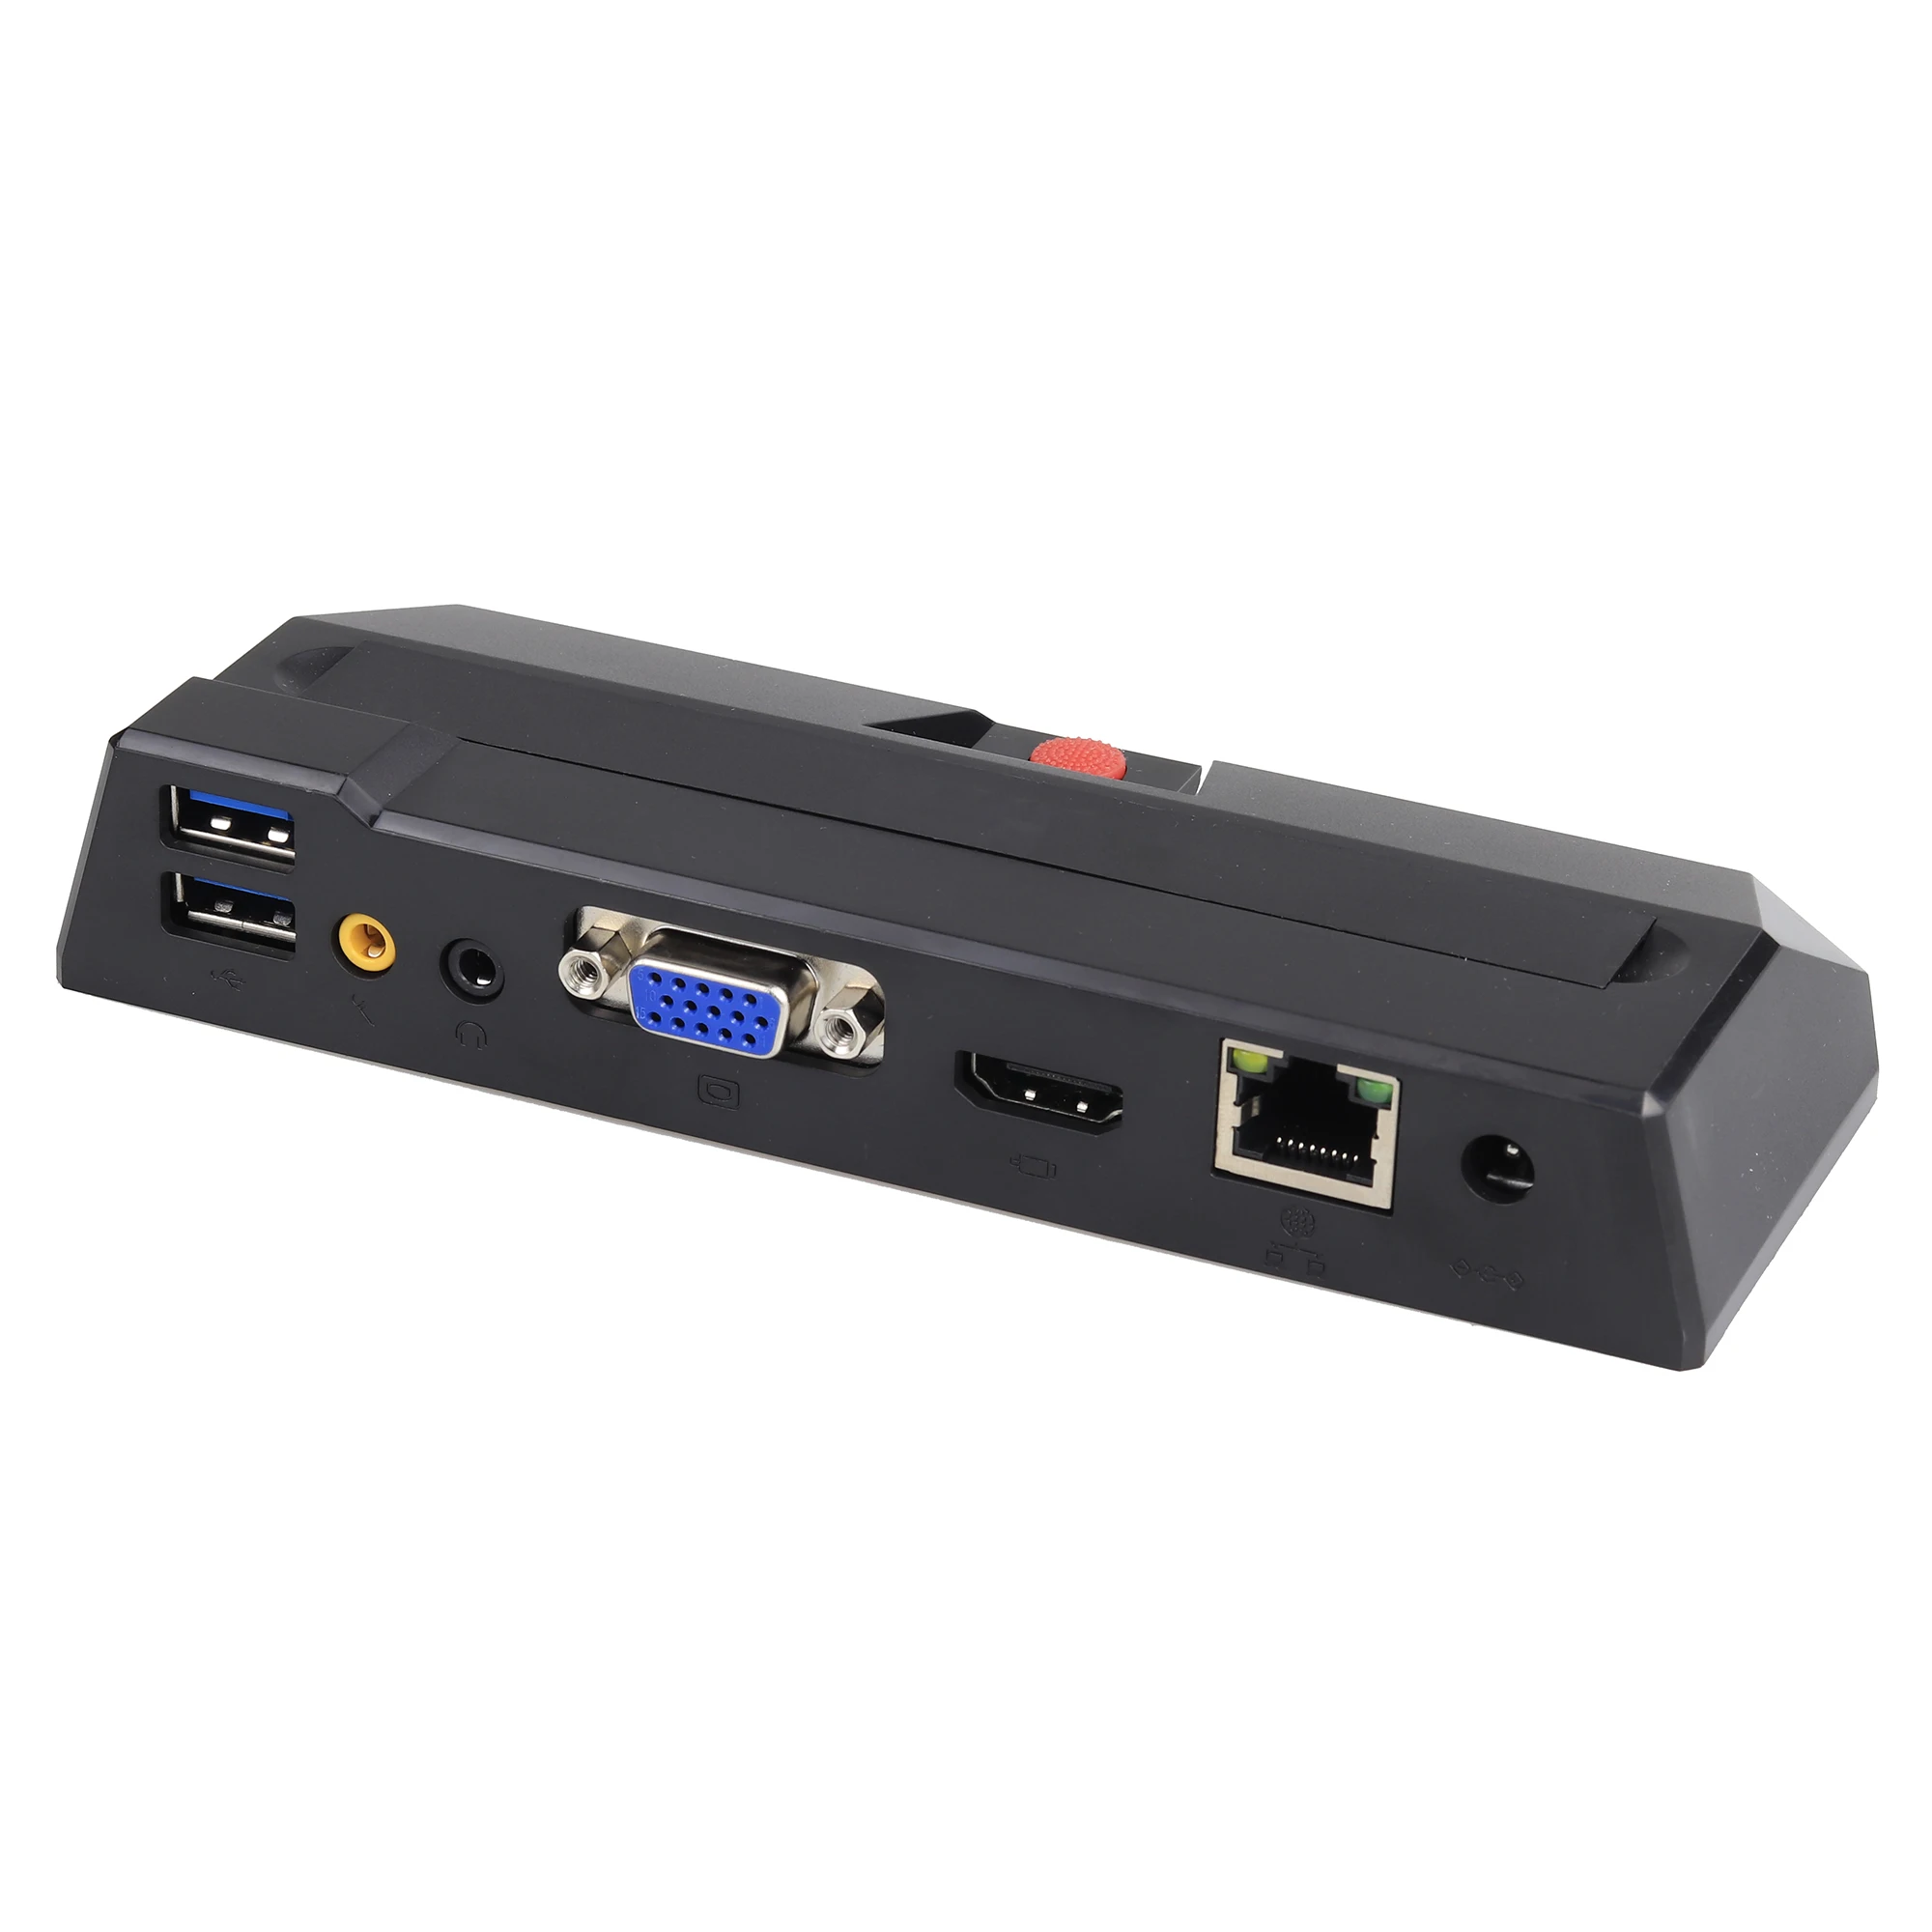 Тонкий клиент портативный RDP8.1 8GB флэш-памяти беспроводной образование/офис виртуальных вычислений с программным обеспечением управления USB принтер